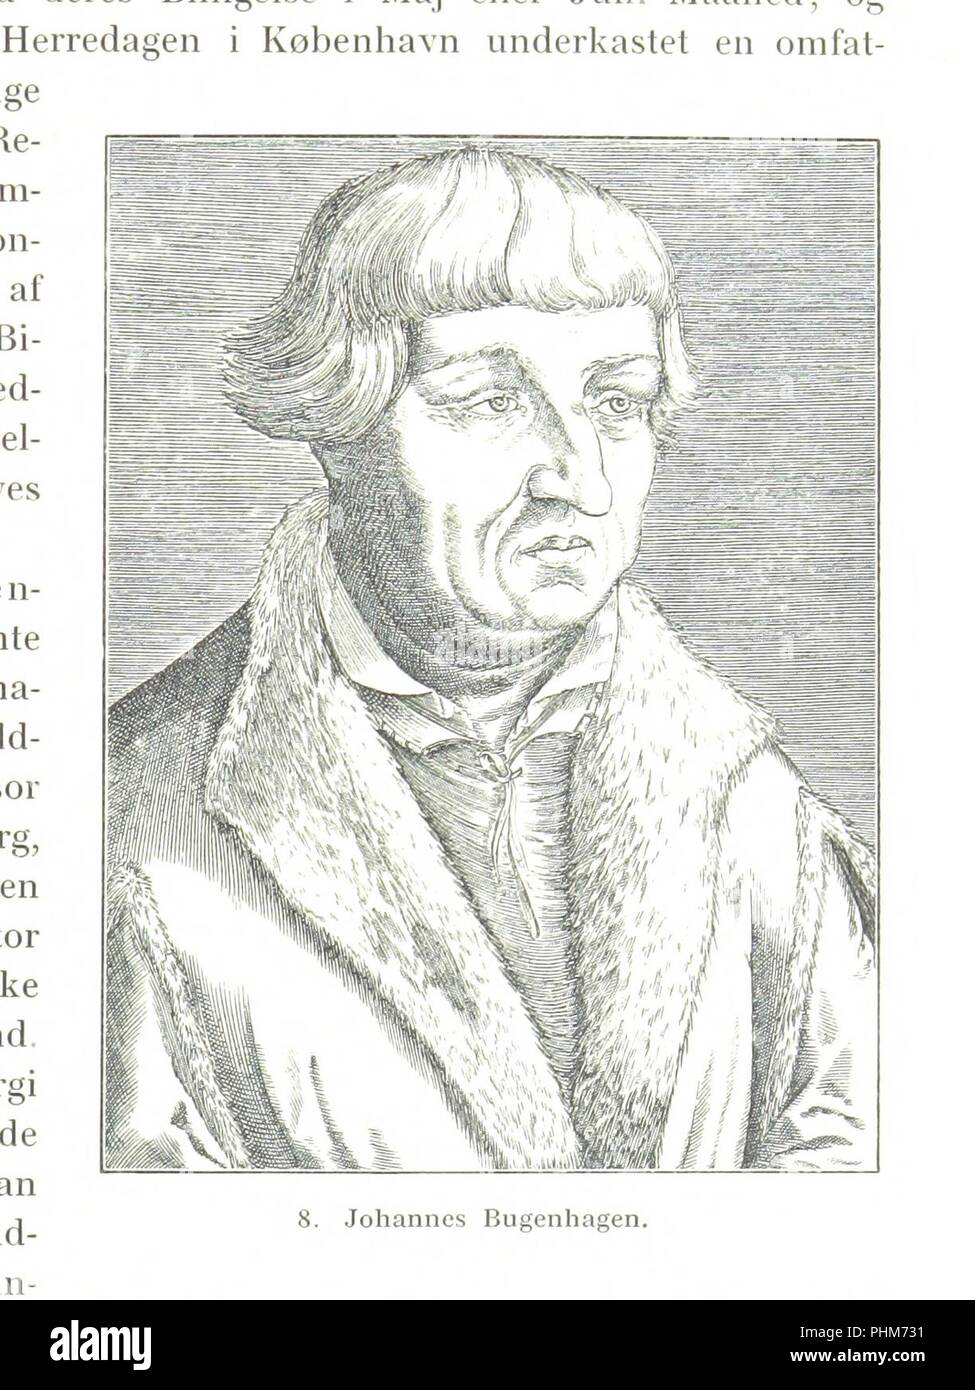 Image  from page 461 of 'Danmarks Riges Historie af J. Steenstrup, Kr. Erslev, A. Heise, V. Mollerup, J. A. Fridericia, E. Holm, A. D. Jørgensen. Historisk illustreret' . Stock Photo